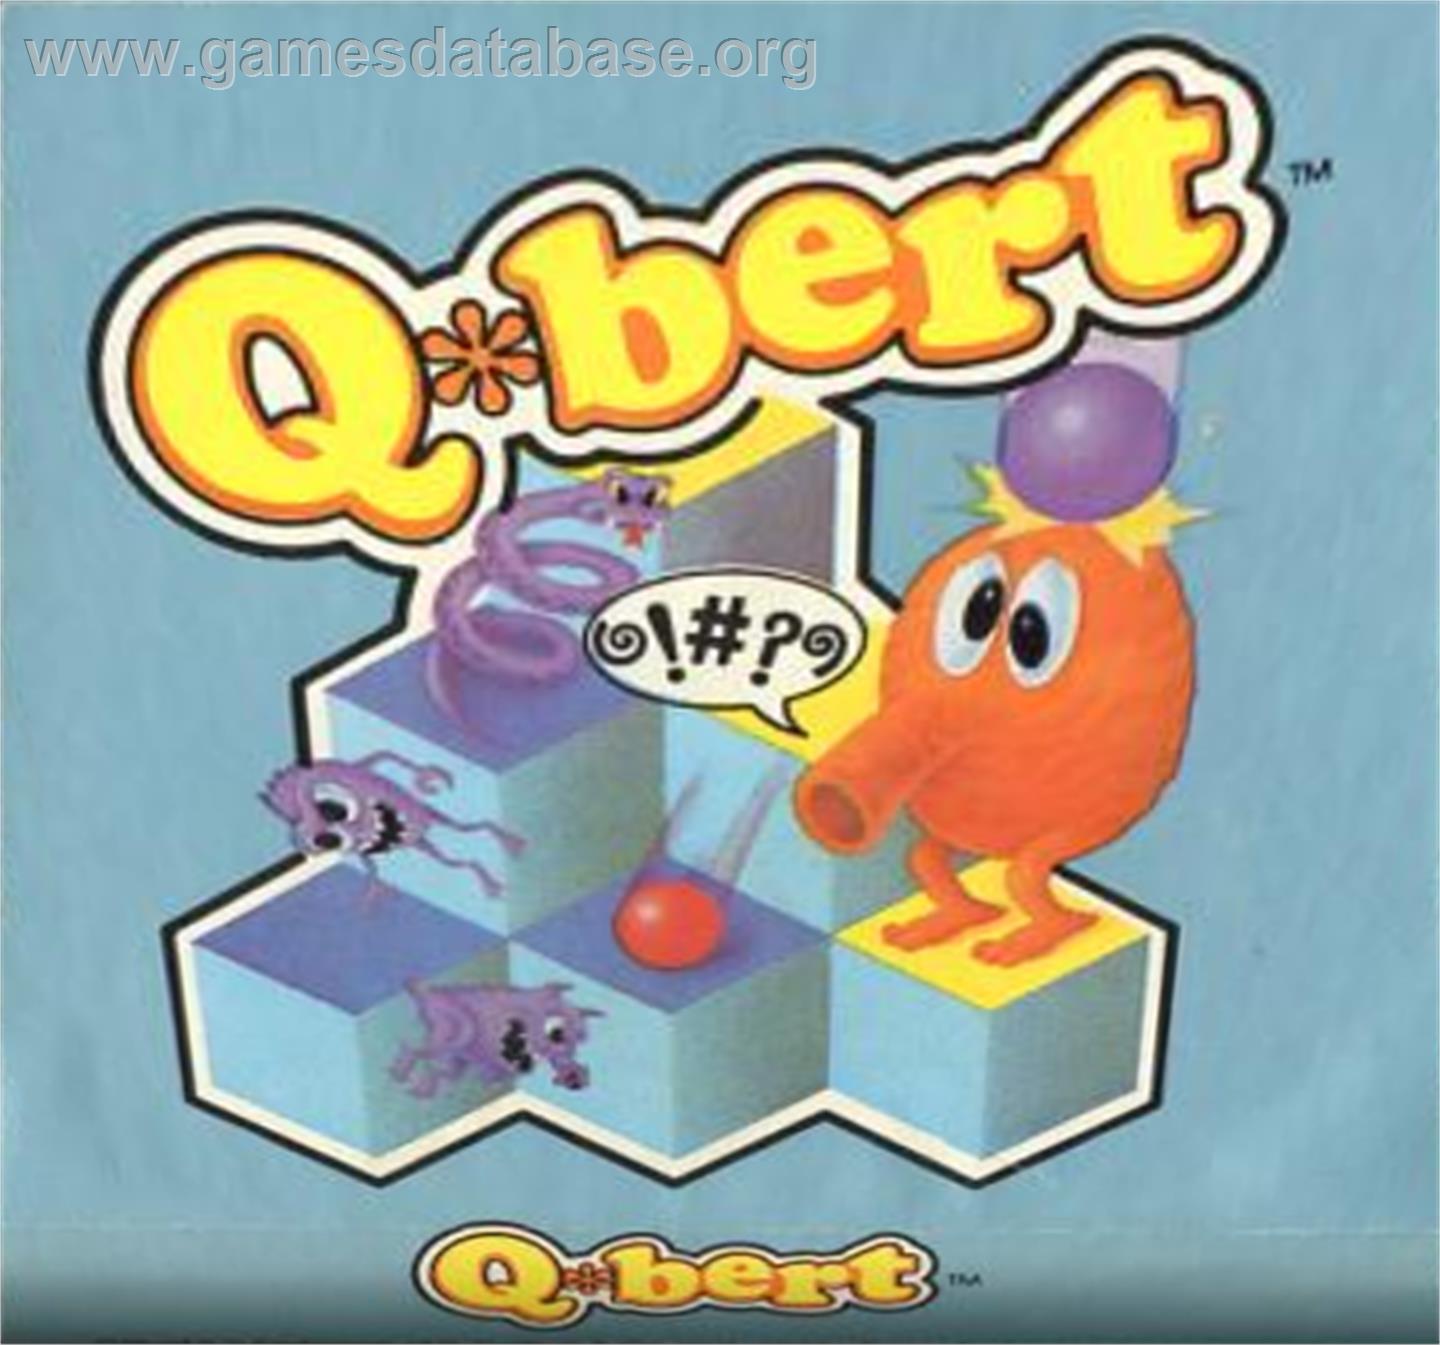 Q*bert - Atari 5200 - Artwork - Cartridge Top